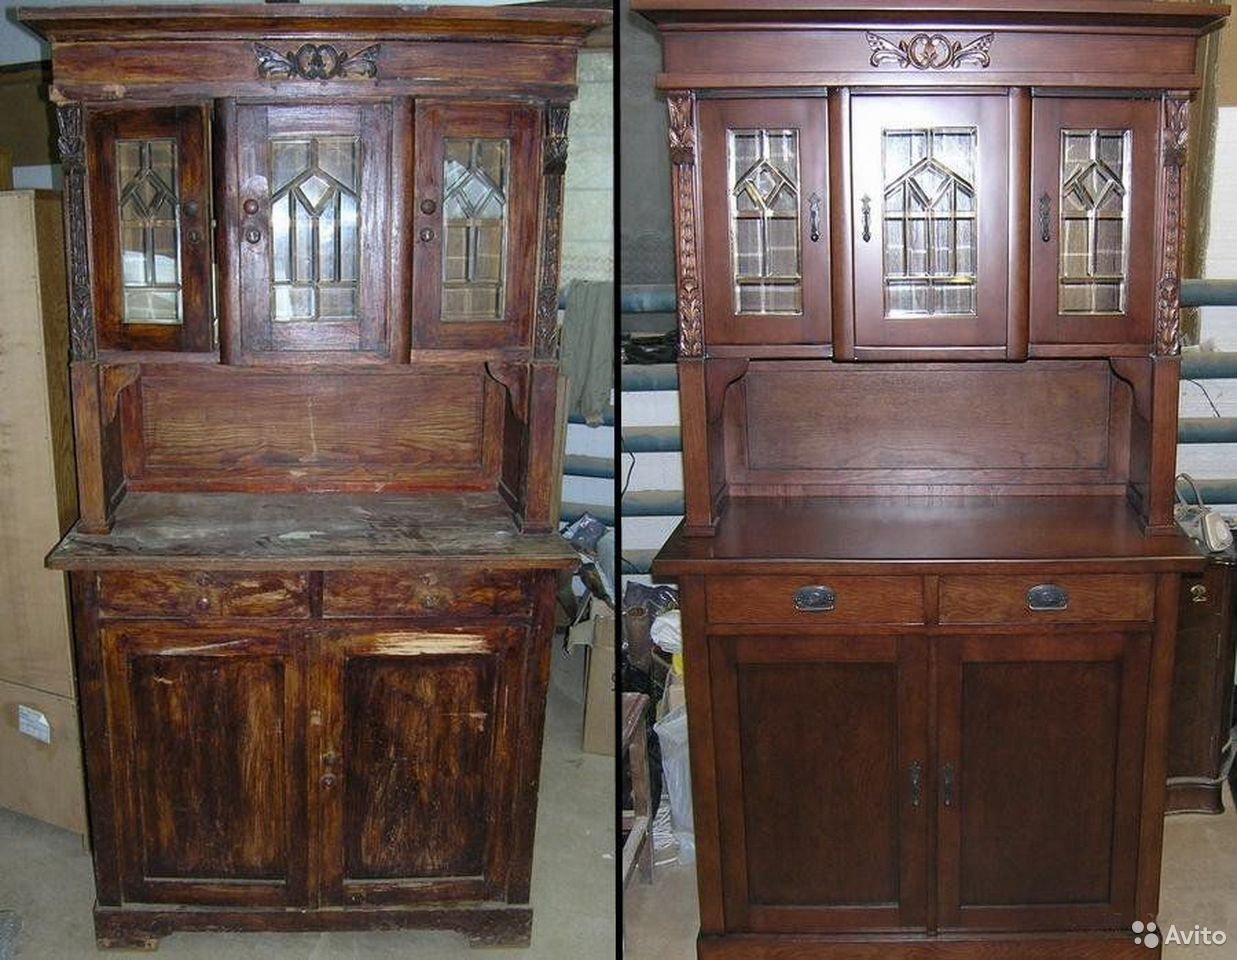 Старая мебельная фабрика. Старая мебель. Реставрируем деревянную мебель. Старинные шкафы и Буфеты. Отреставрированная деревянная мебель.